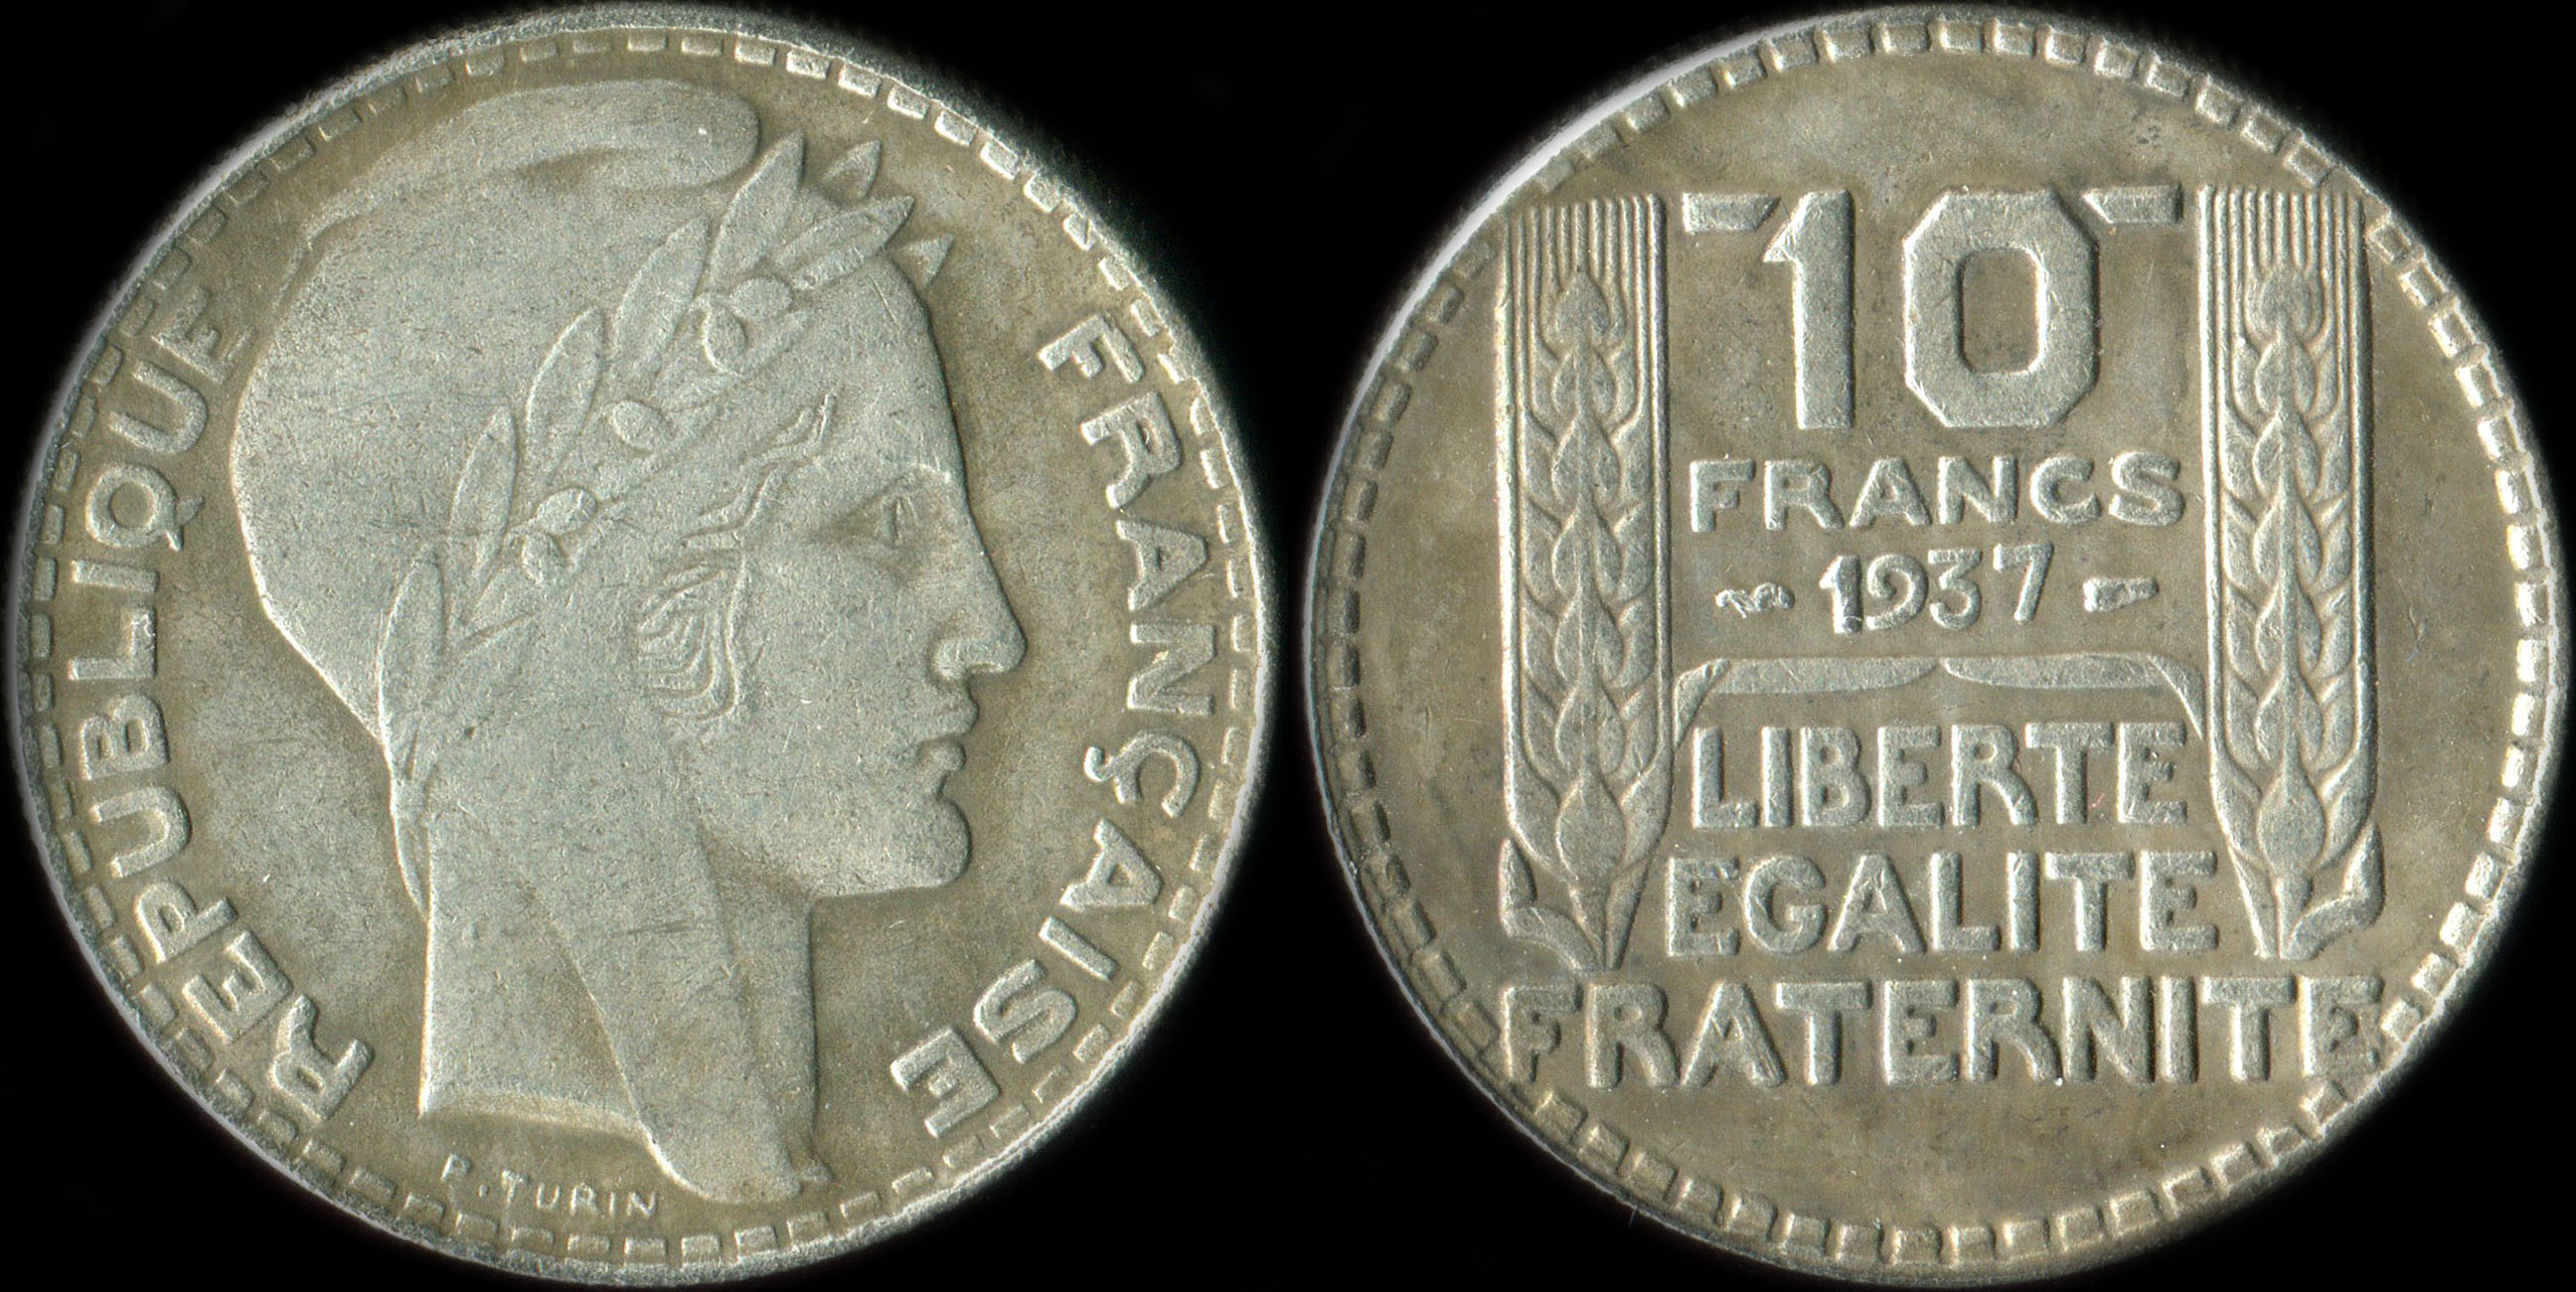 Fausse pice de 10 francs Turin argent 1937